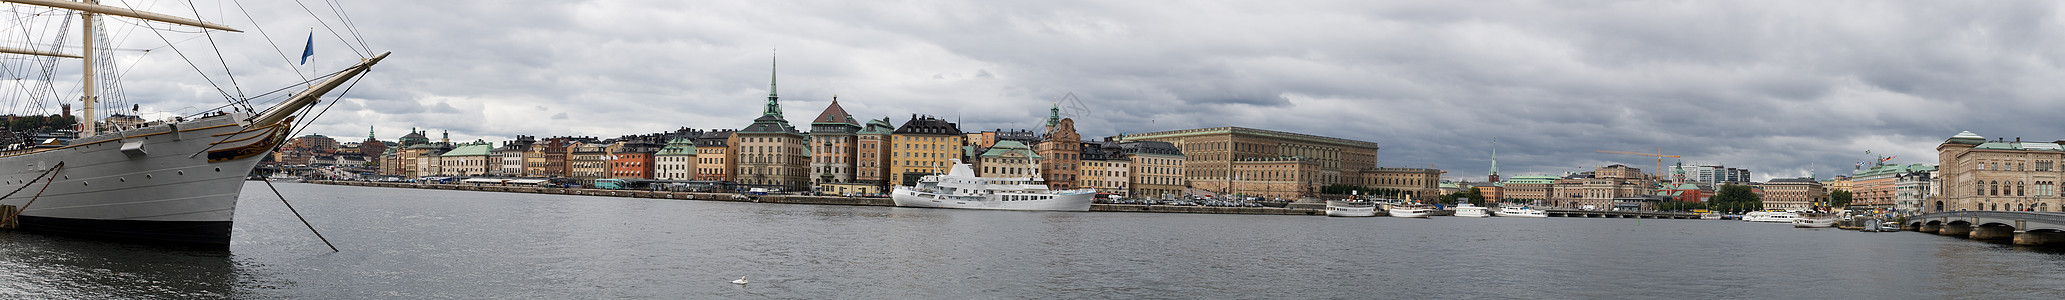 斯德哥尔摩全景旅行城市建筑地标房子建筑学港口建筑物蓝色首都图片